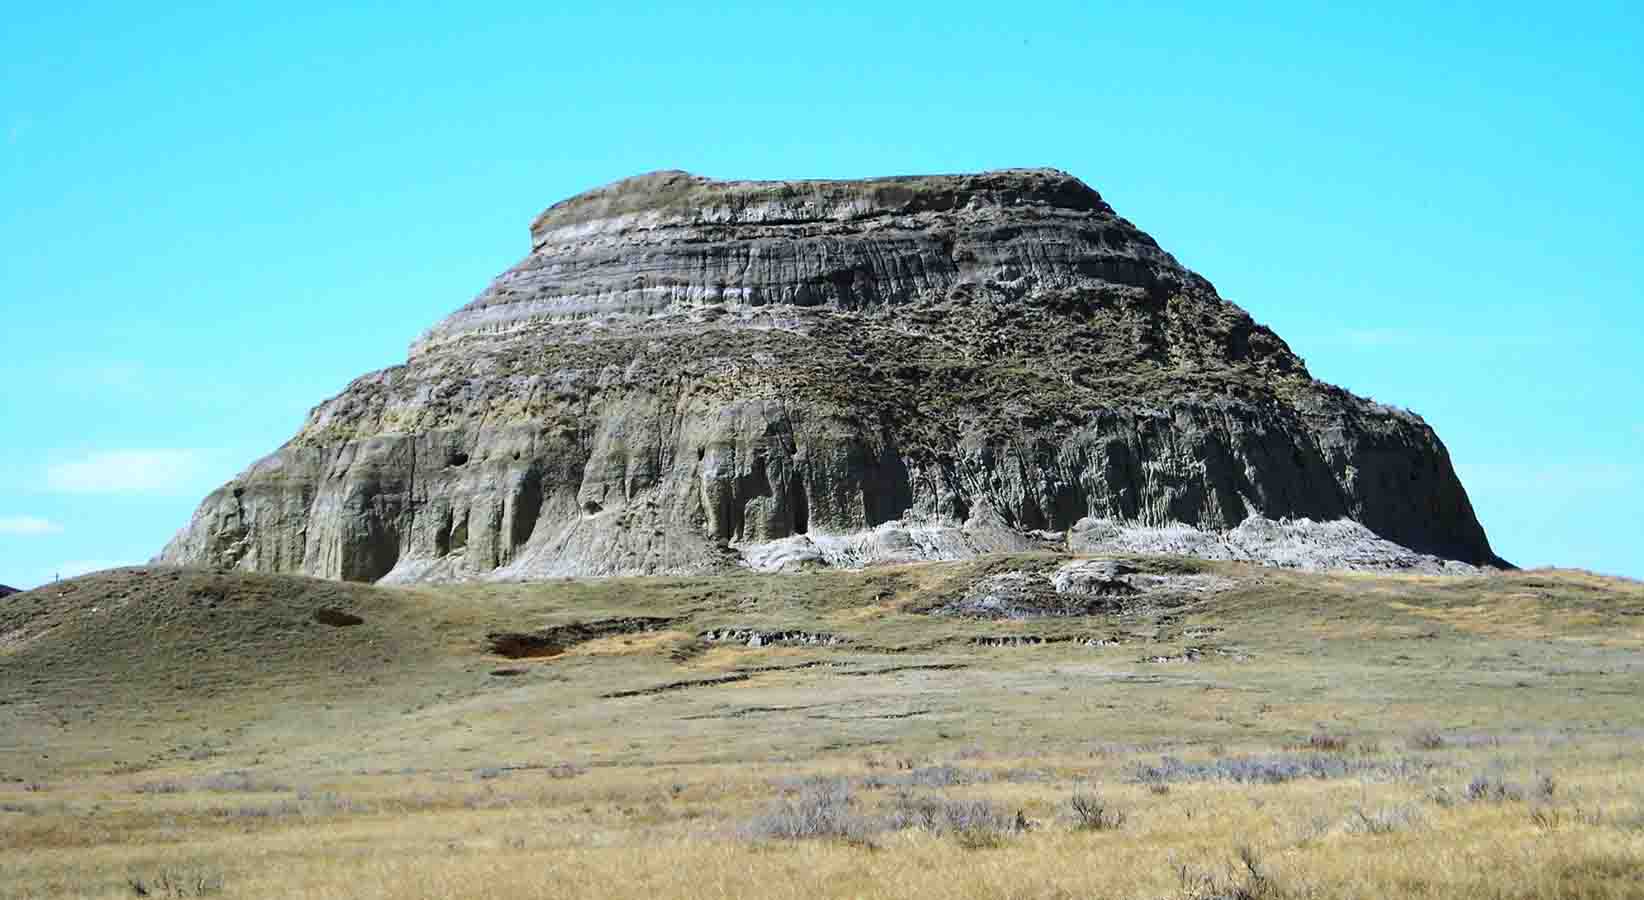 A large rock formation found in Coronach, Saskatchewan